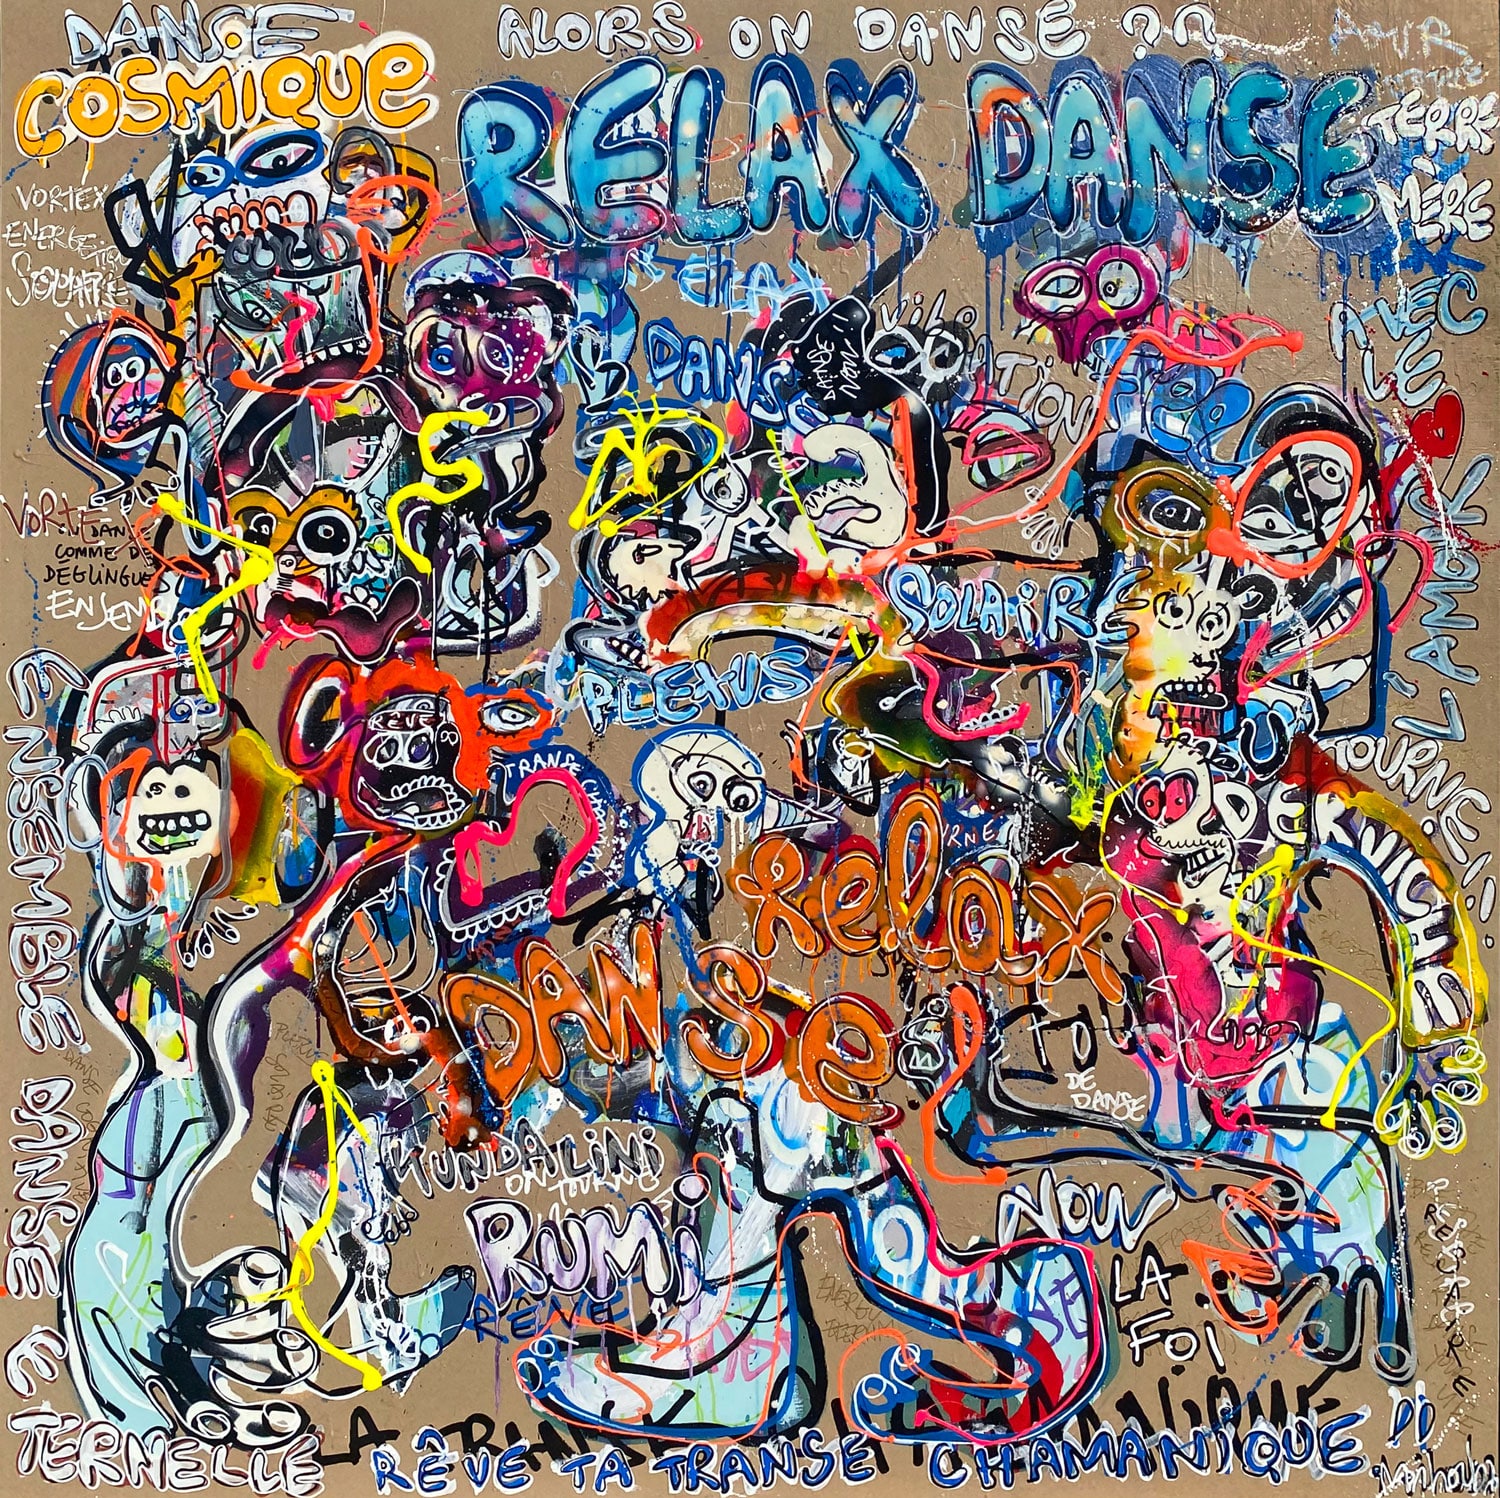 RELAX DANCE 50x150cm 2023 mihoub artiste peintre. Mihoub est un peintre de l'art brut conscient.